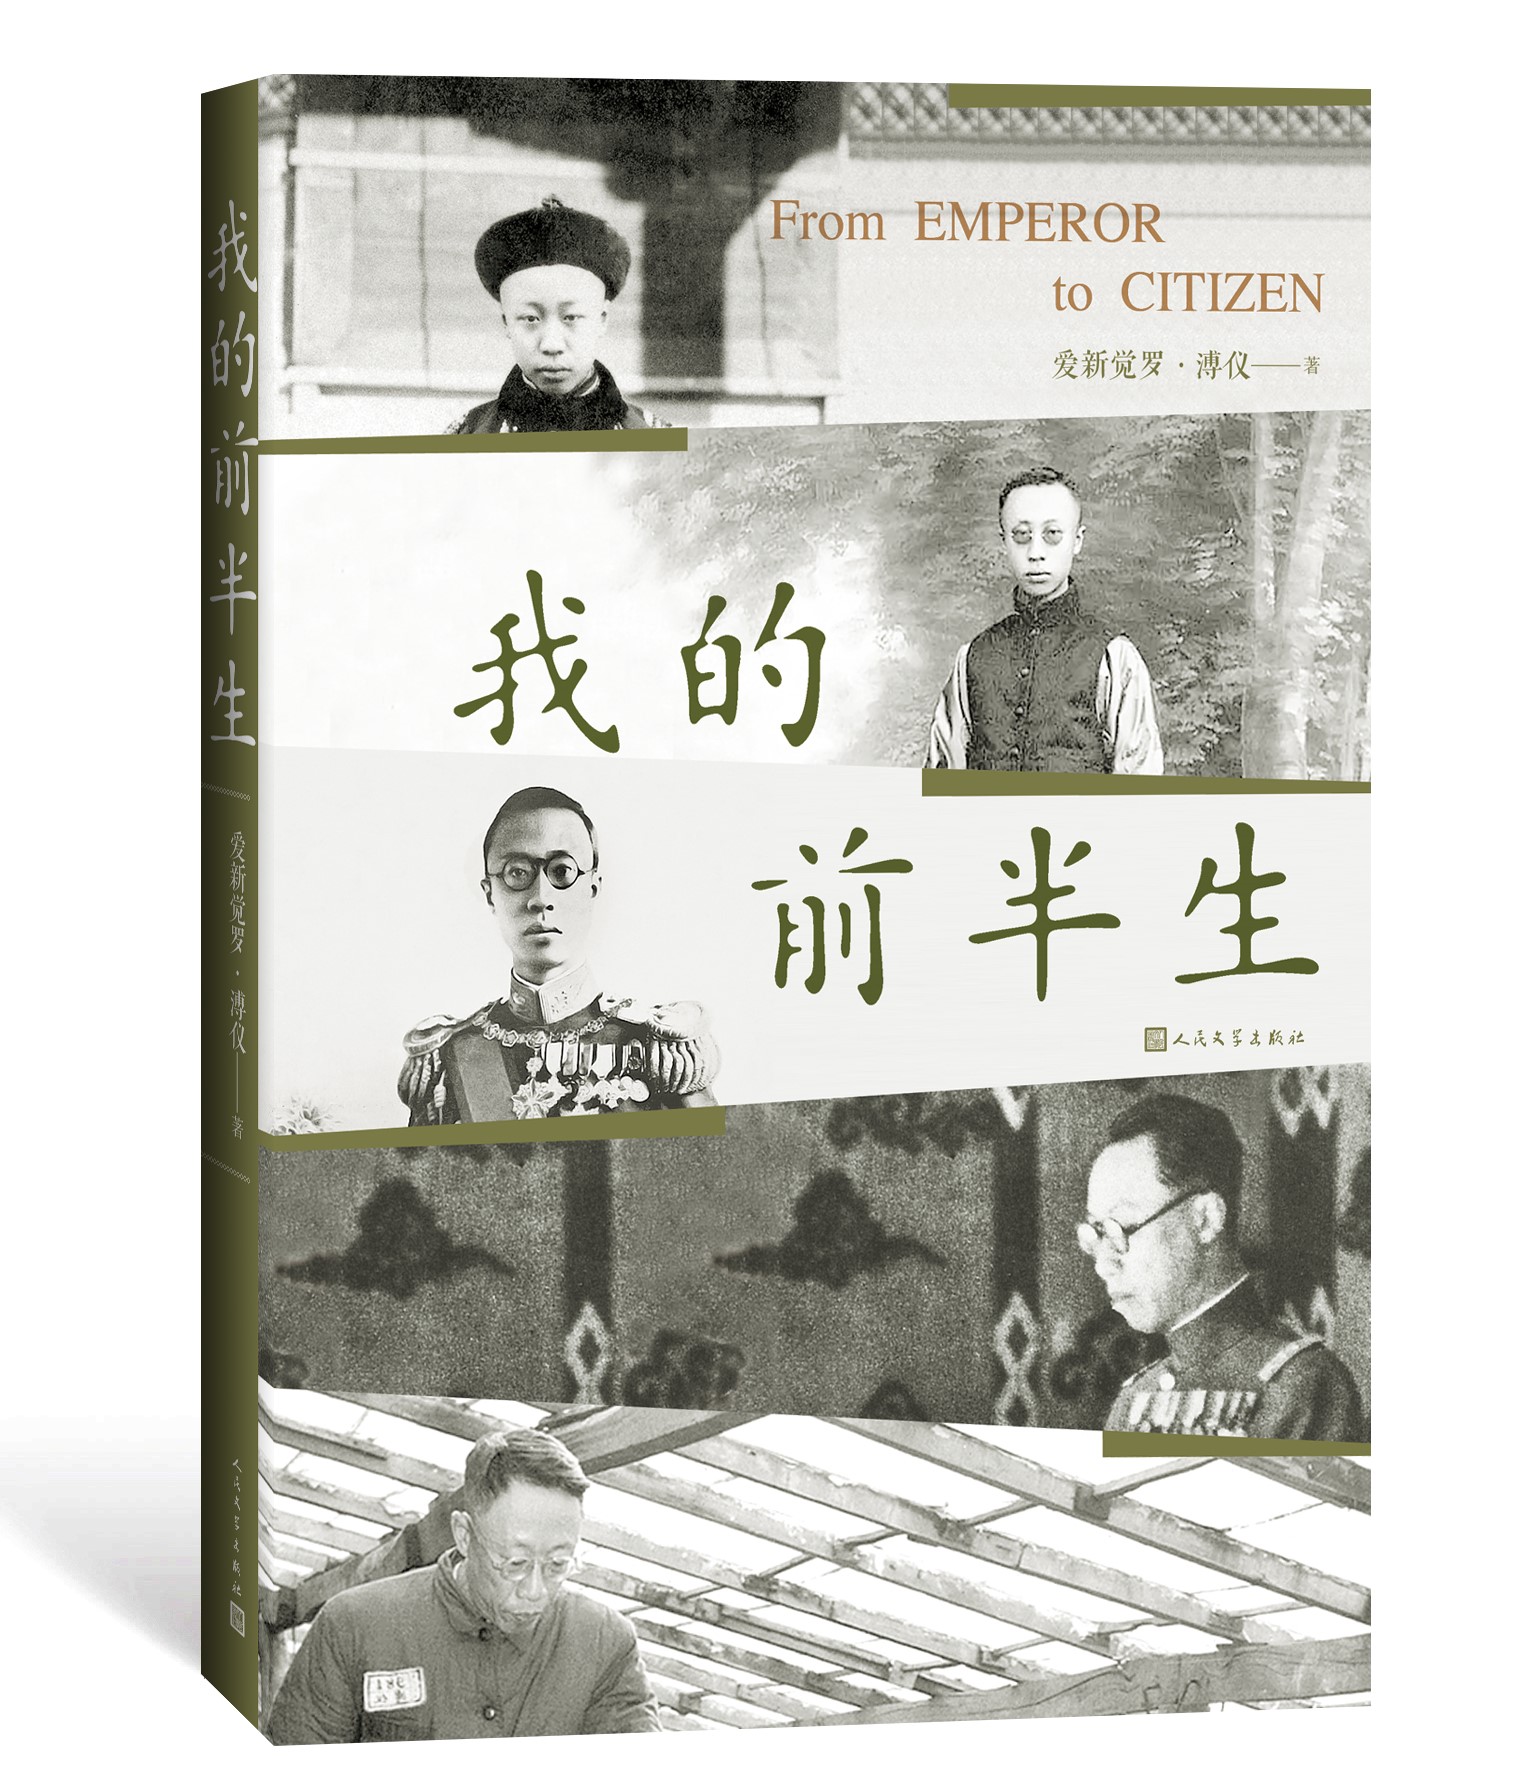 我的前半生溥仪著普通读者了解中国近代以来的曲折历史有很好的普及作用人民文学出版社